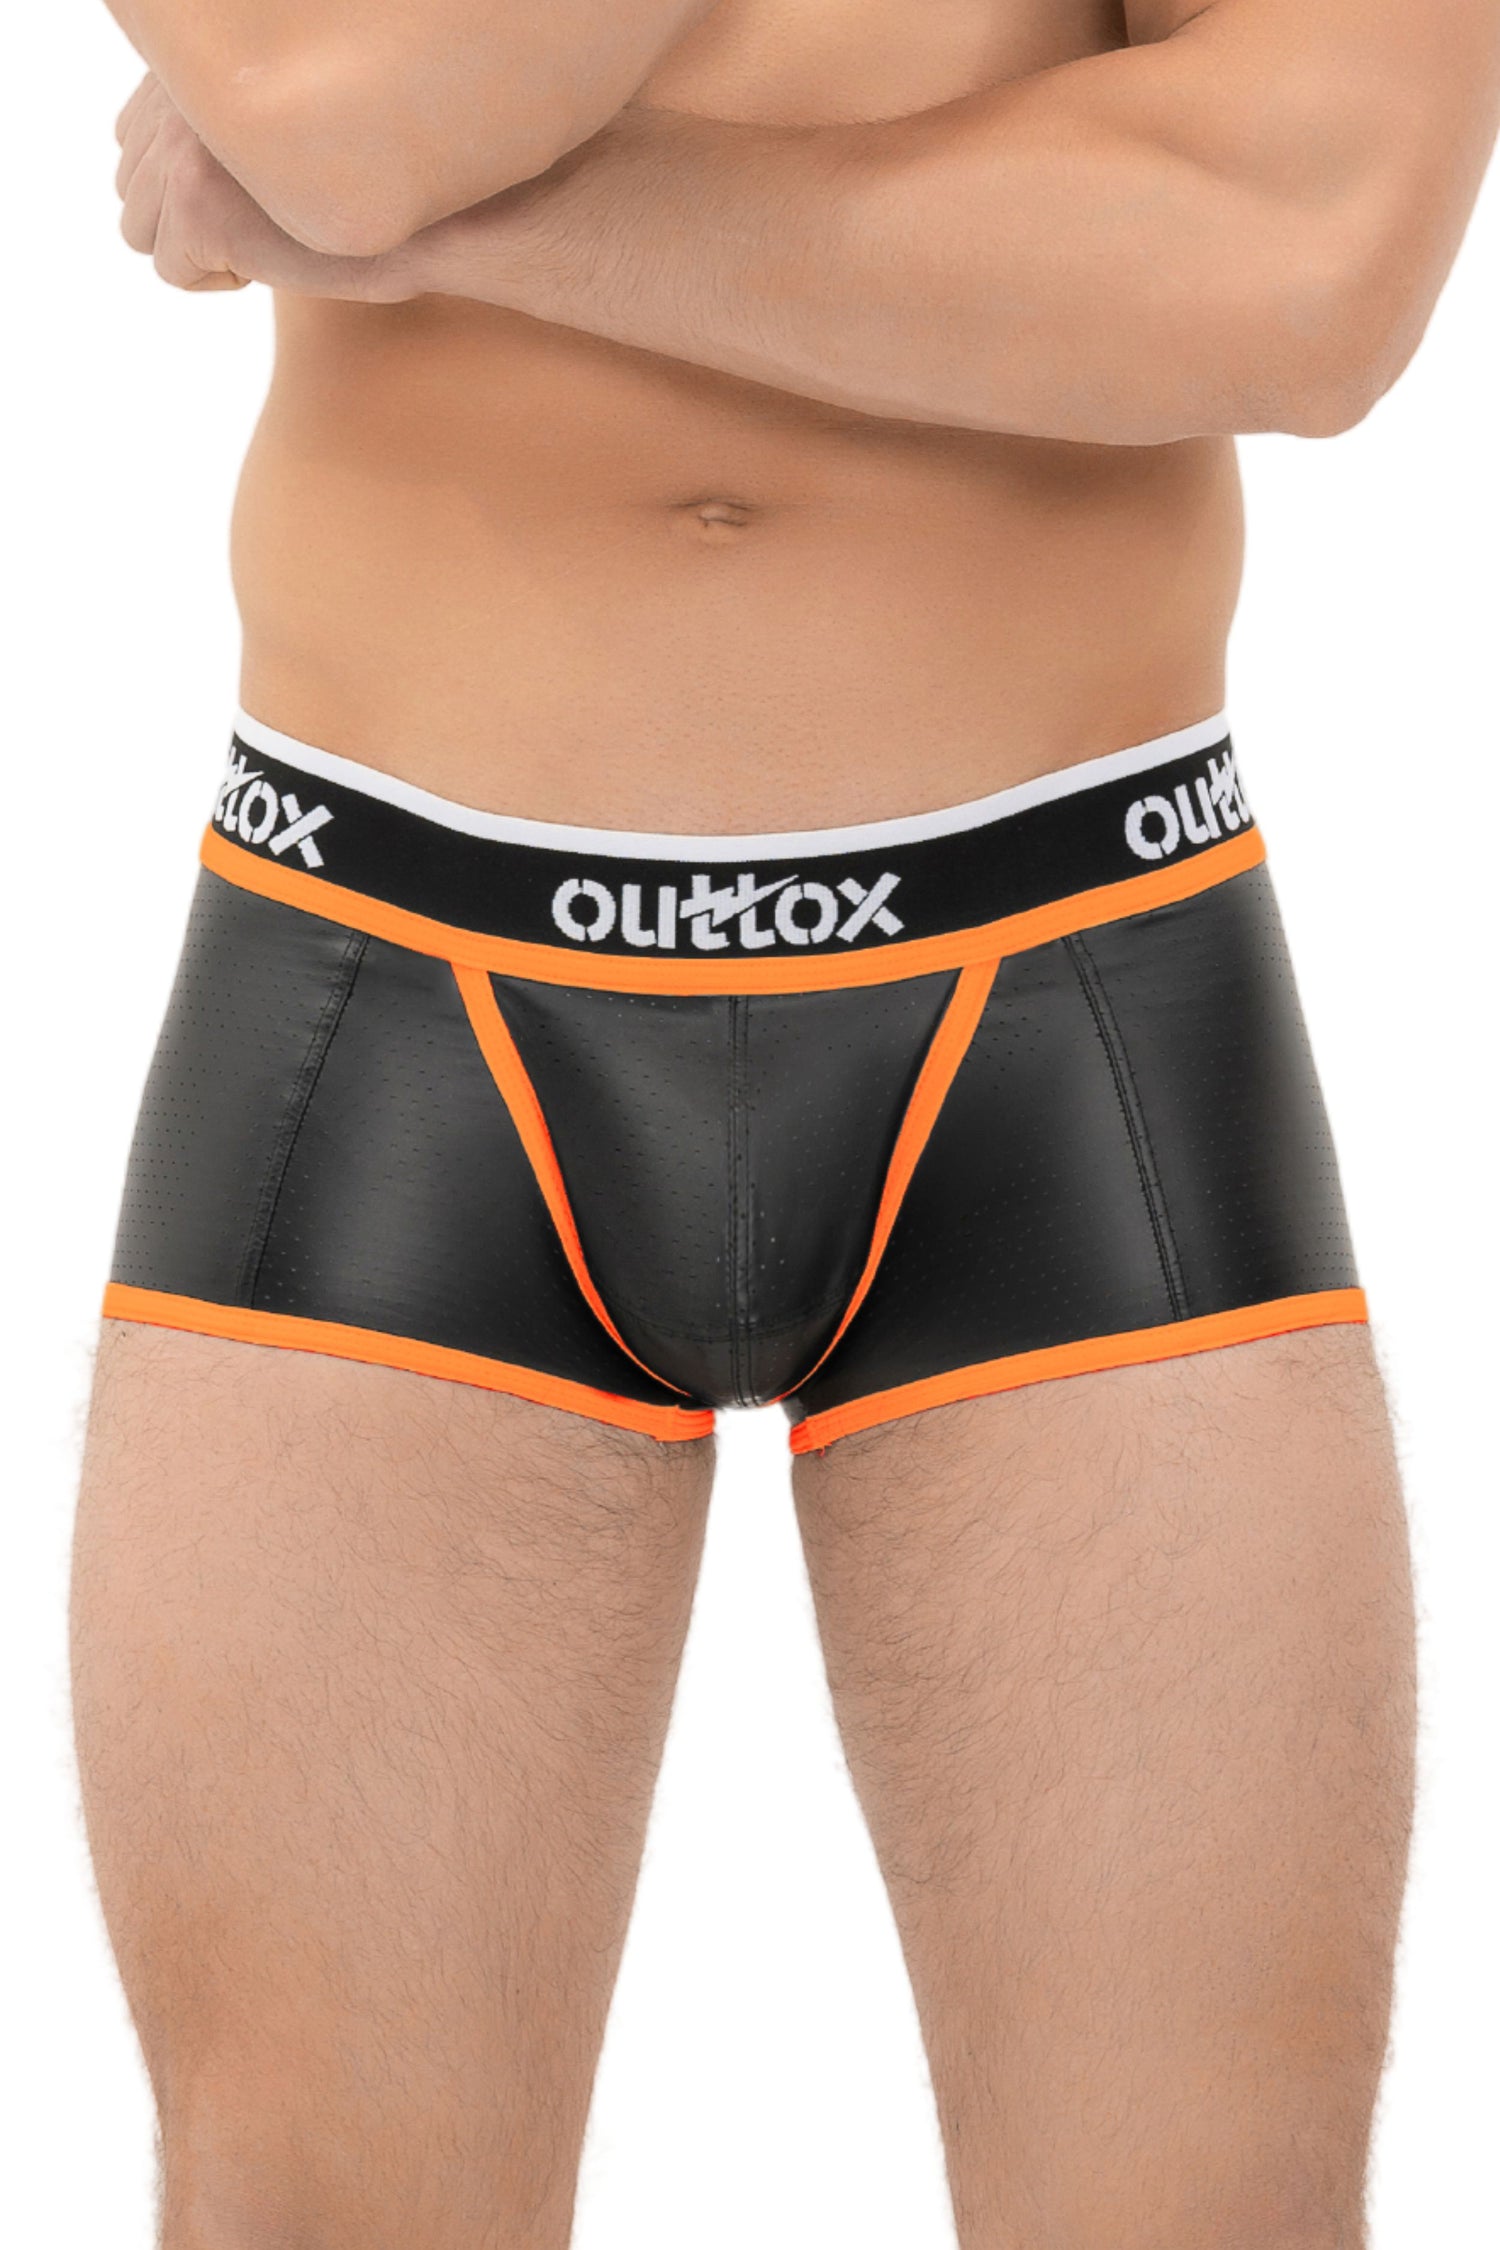 Outtox. Short de coffre arrière enveloppé avec pièce à pression. Noir + Orange